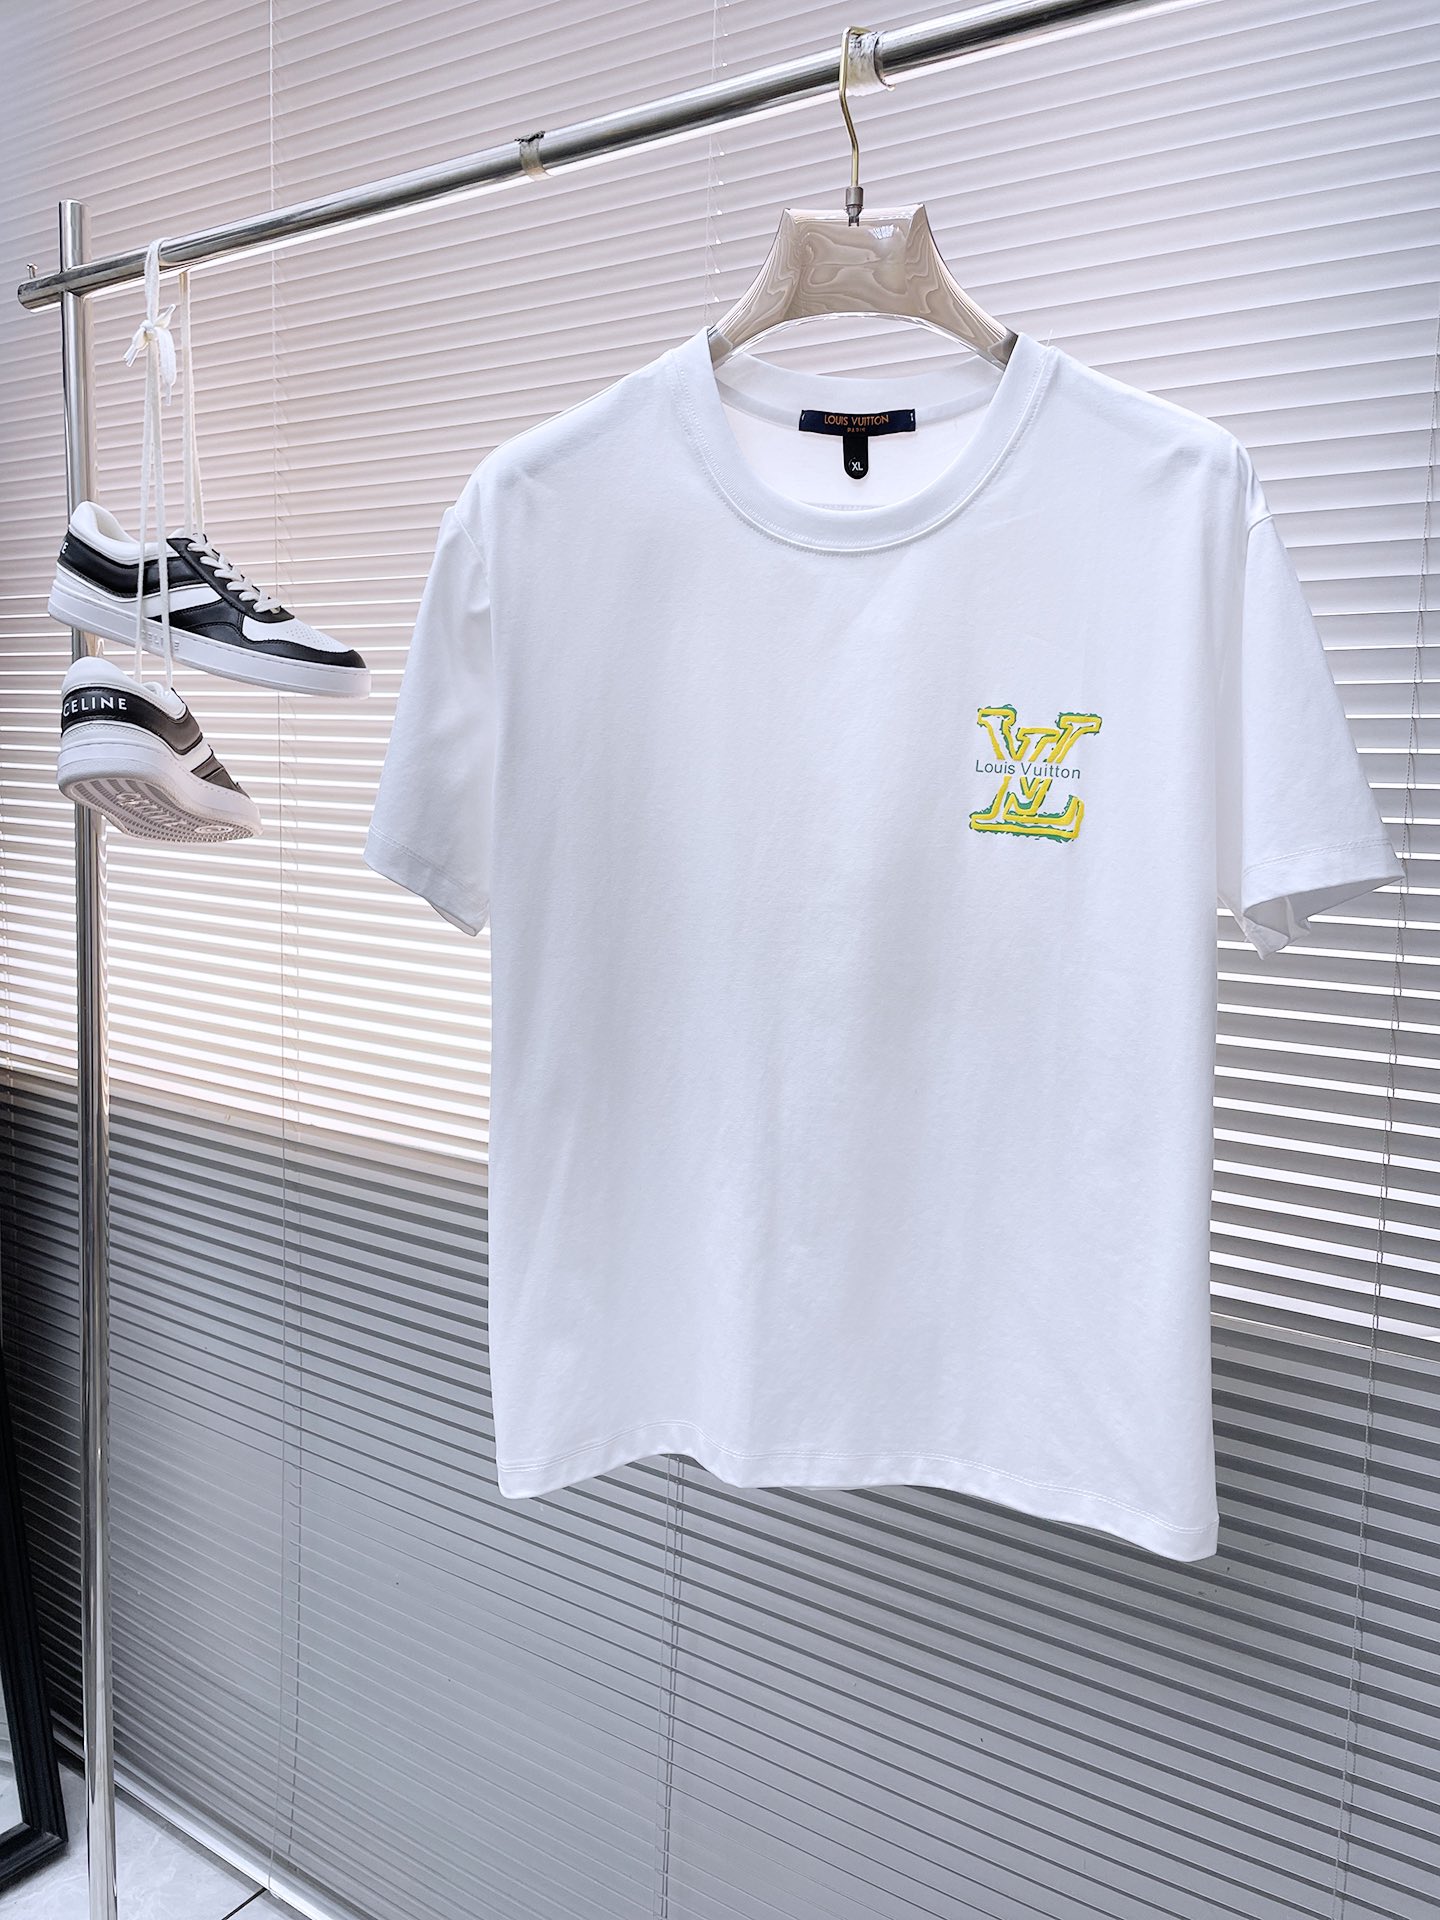 Verkoop van hoge kwaliteit
 Louis Vuitton Aaaaaa
 Kleding T-Shirt Katoen Gemerceriseerd katoen Lente/Zomercollectie Korte mouw